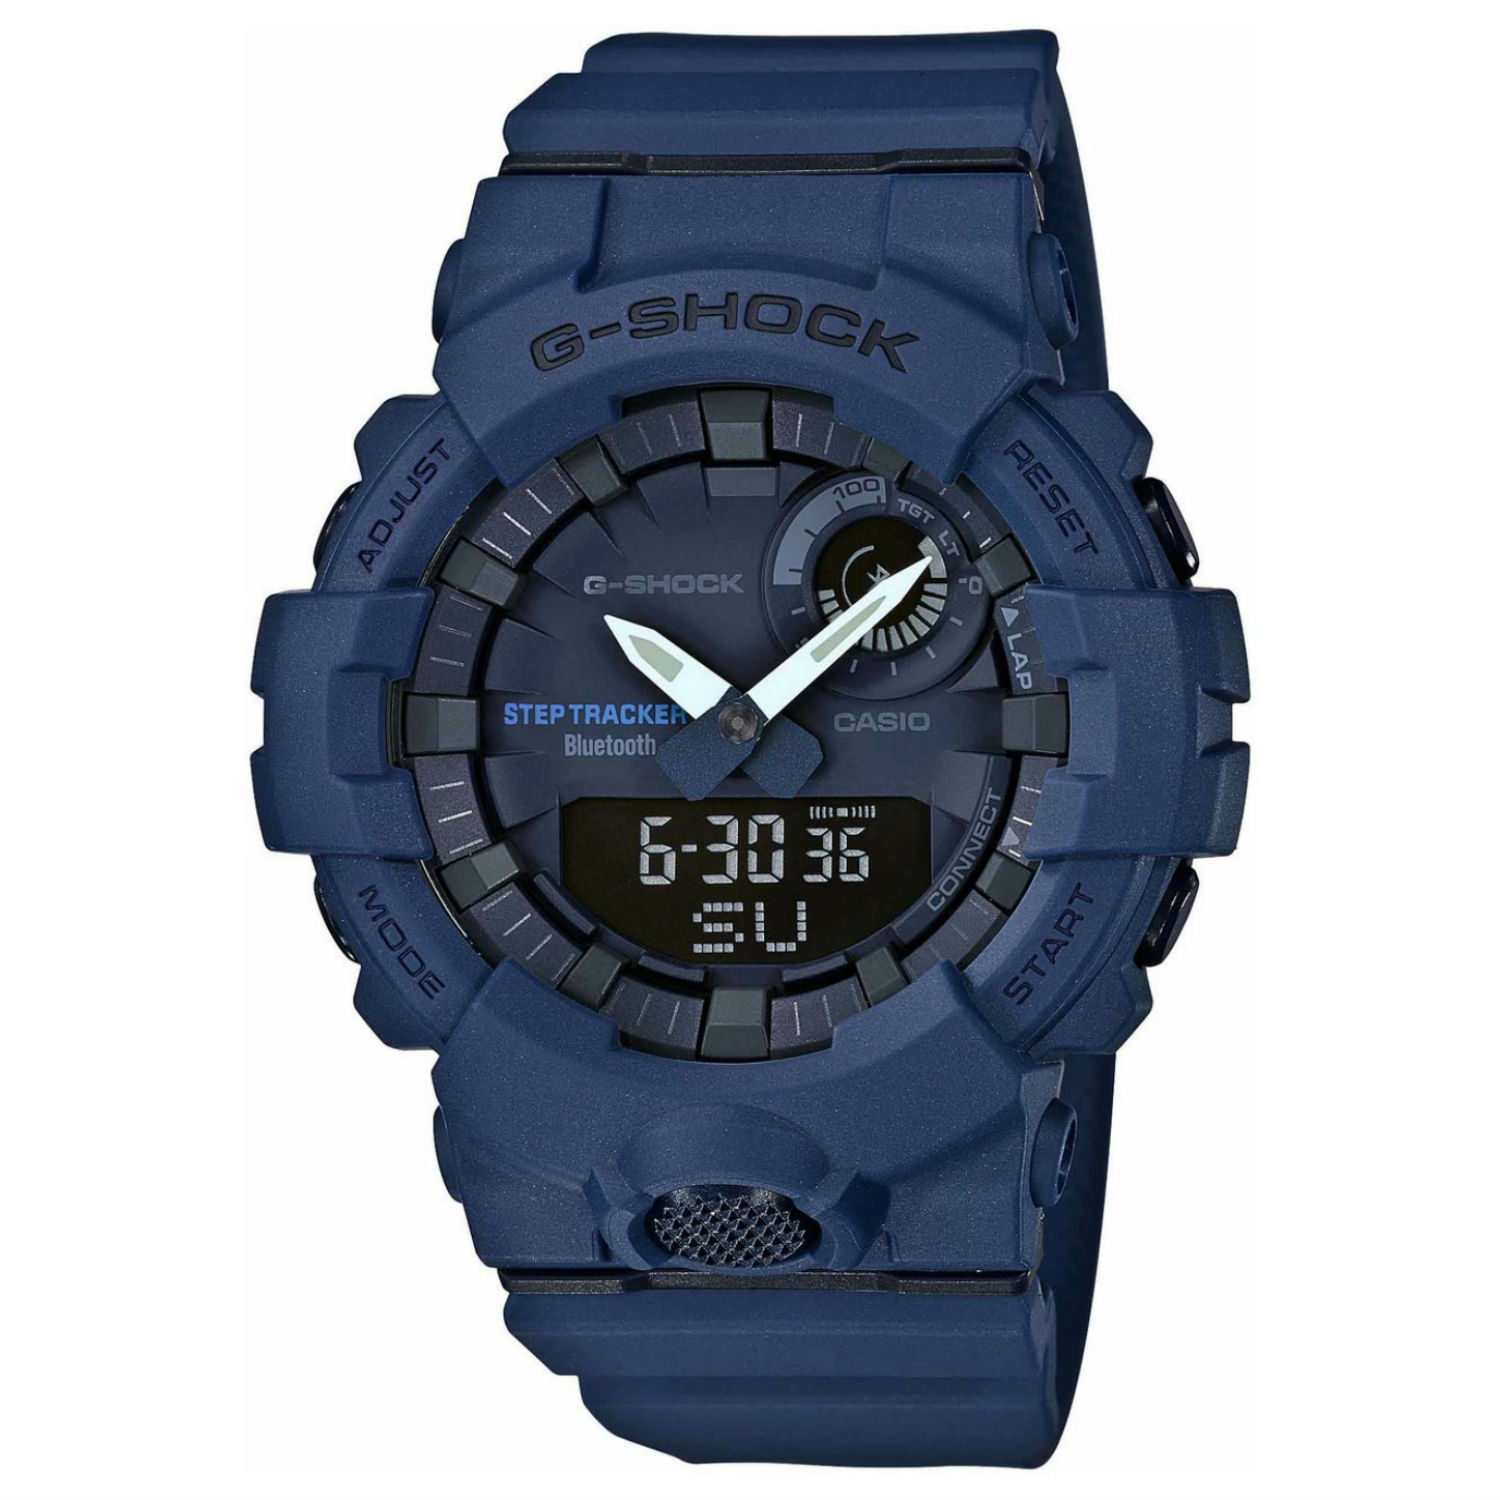 美しい Resin Yellow Dial Digital Analog G-Shock GBA800-9A Casio カシオ 腕時計 Band  New Watch 腕時計 【重要】海外の最新在庫状況を確認の上ご連絡いたします。:残念ながら在庫のない場合キャンセルの可能性がございます。 -  www.collectiviteslocales.fr